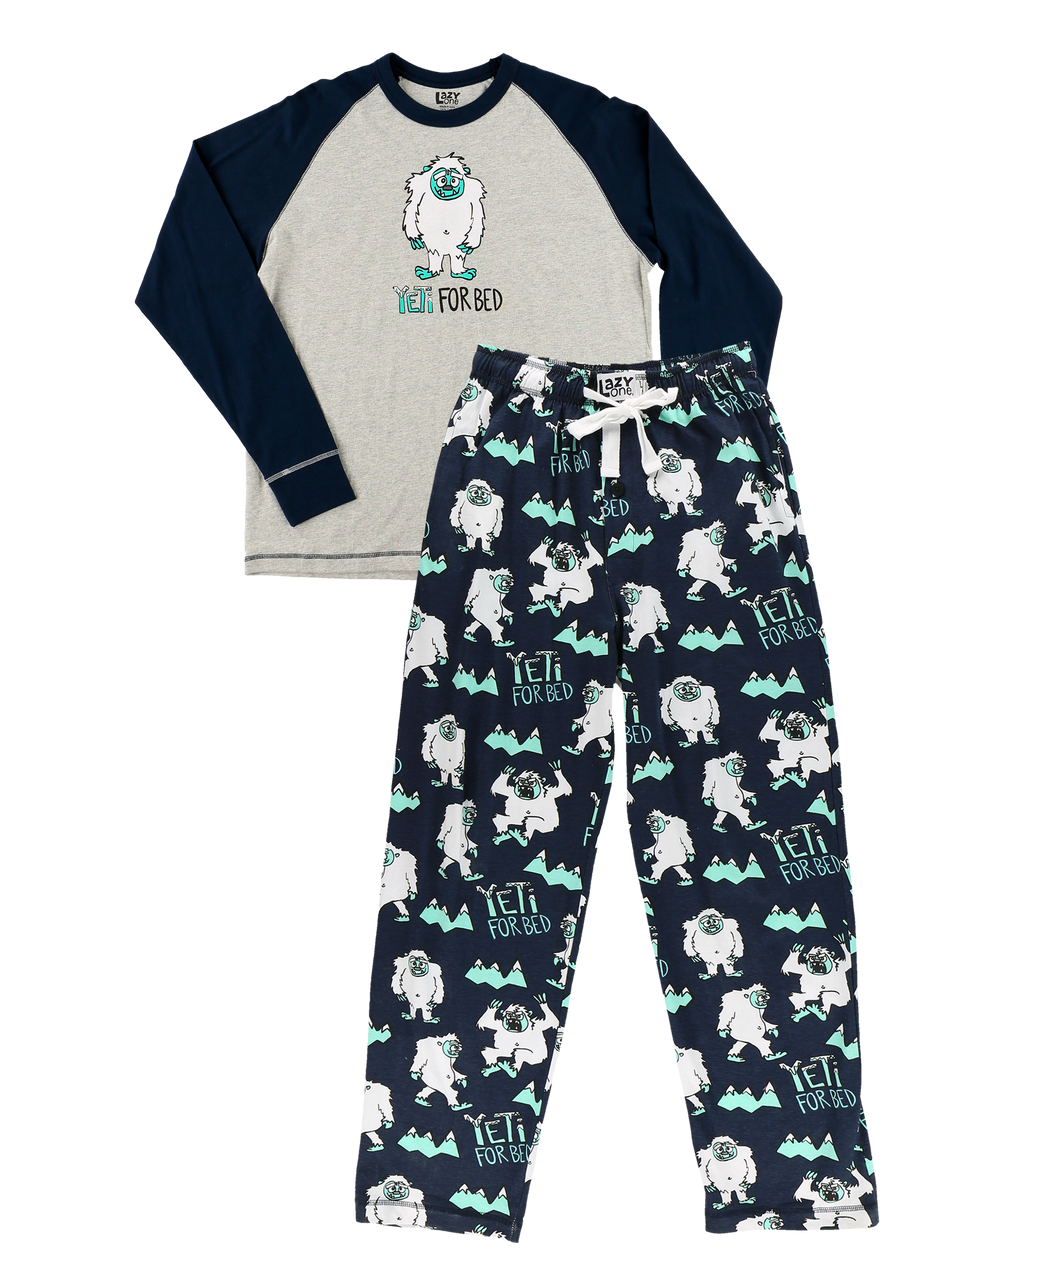 Yeti For Bed Men's Long Sleeve Pajama Set